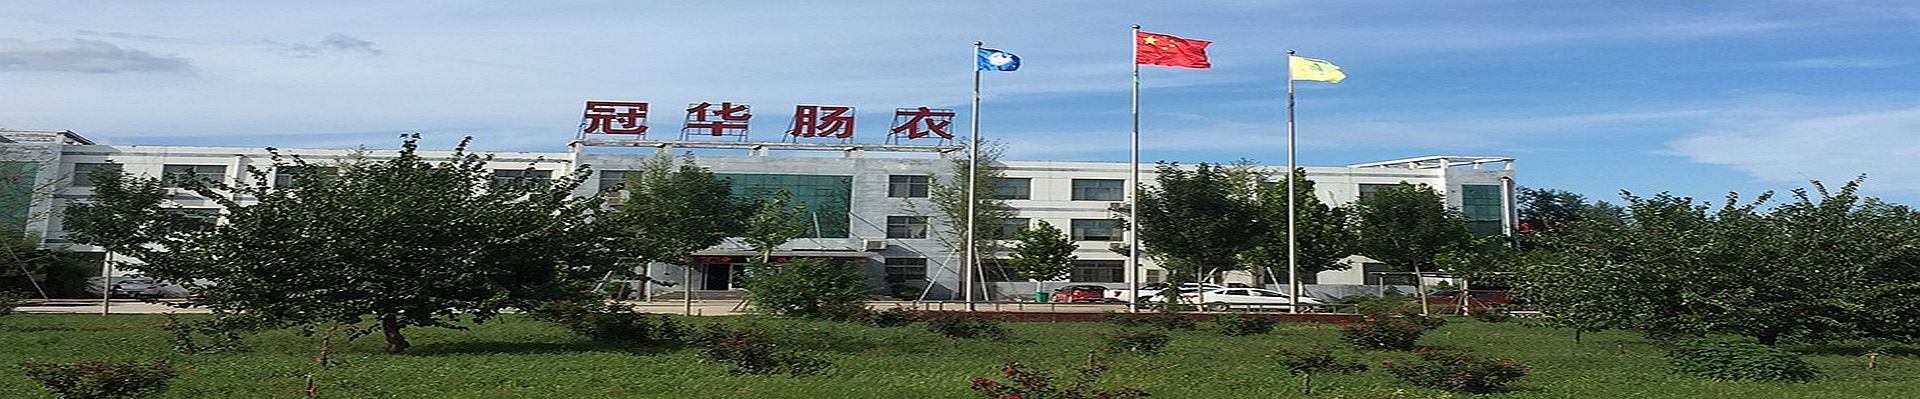 China collagen casing manufacturer & supplier Crown